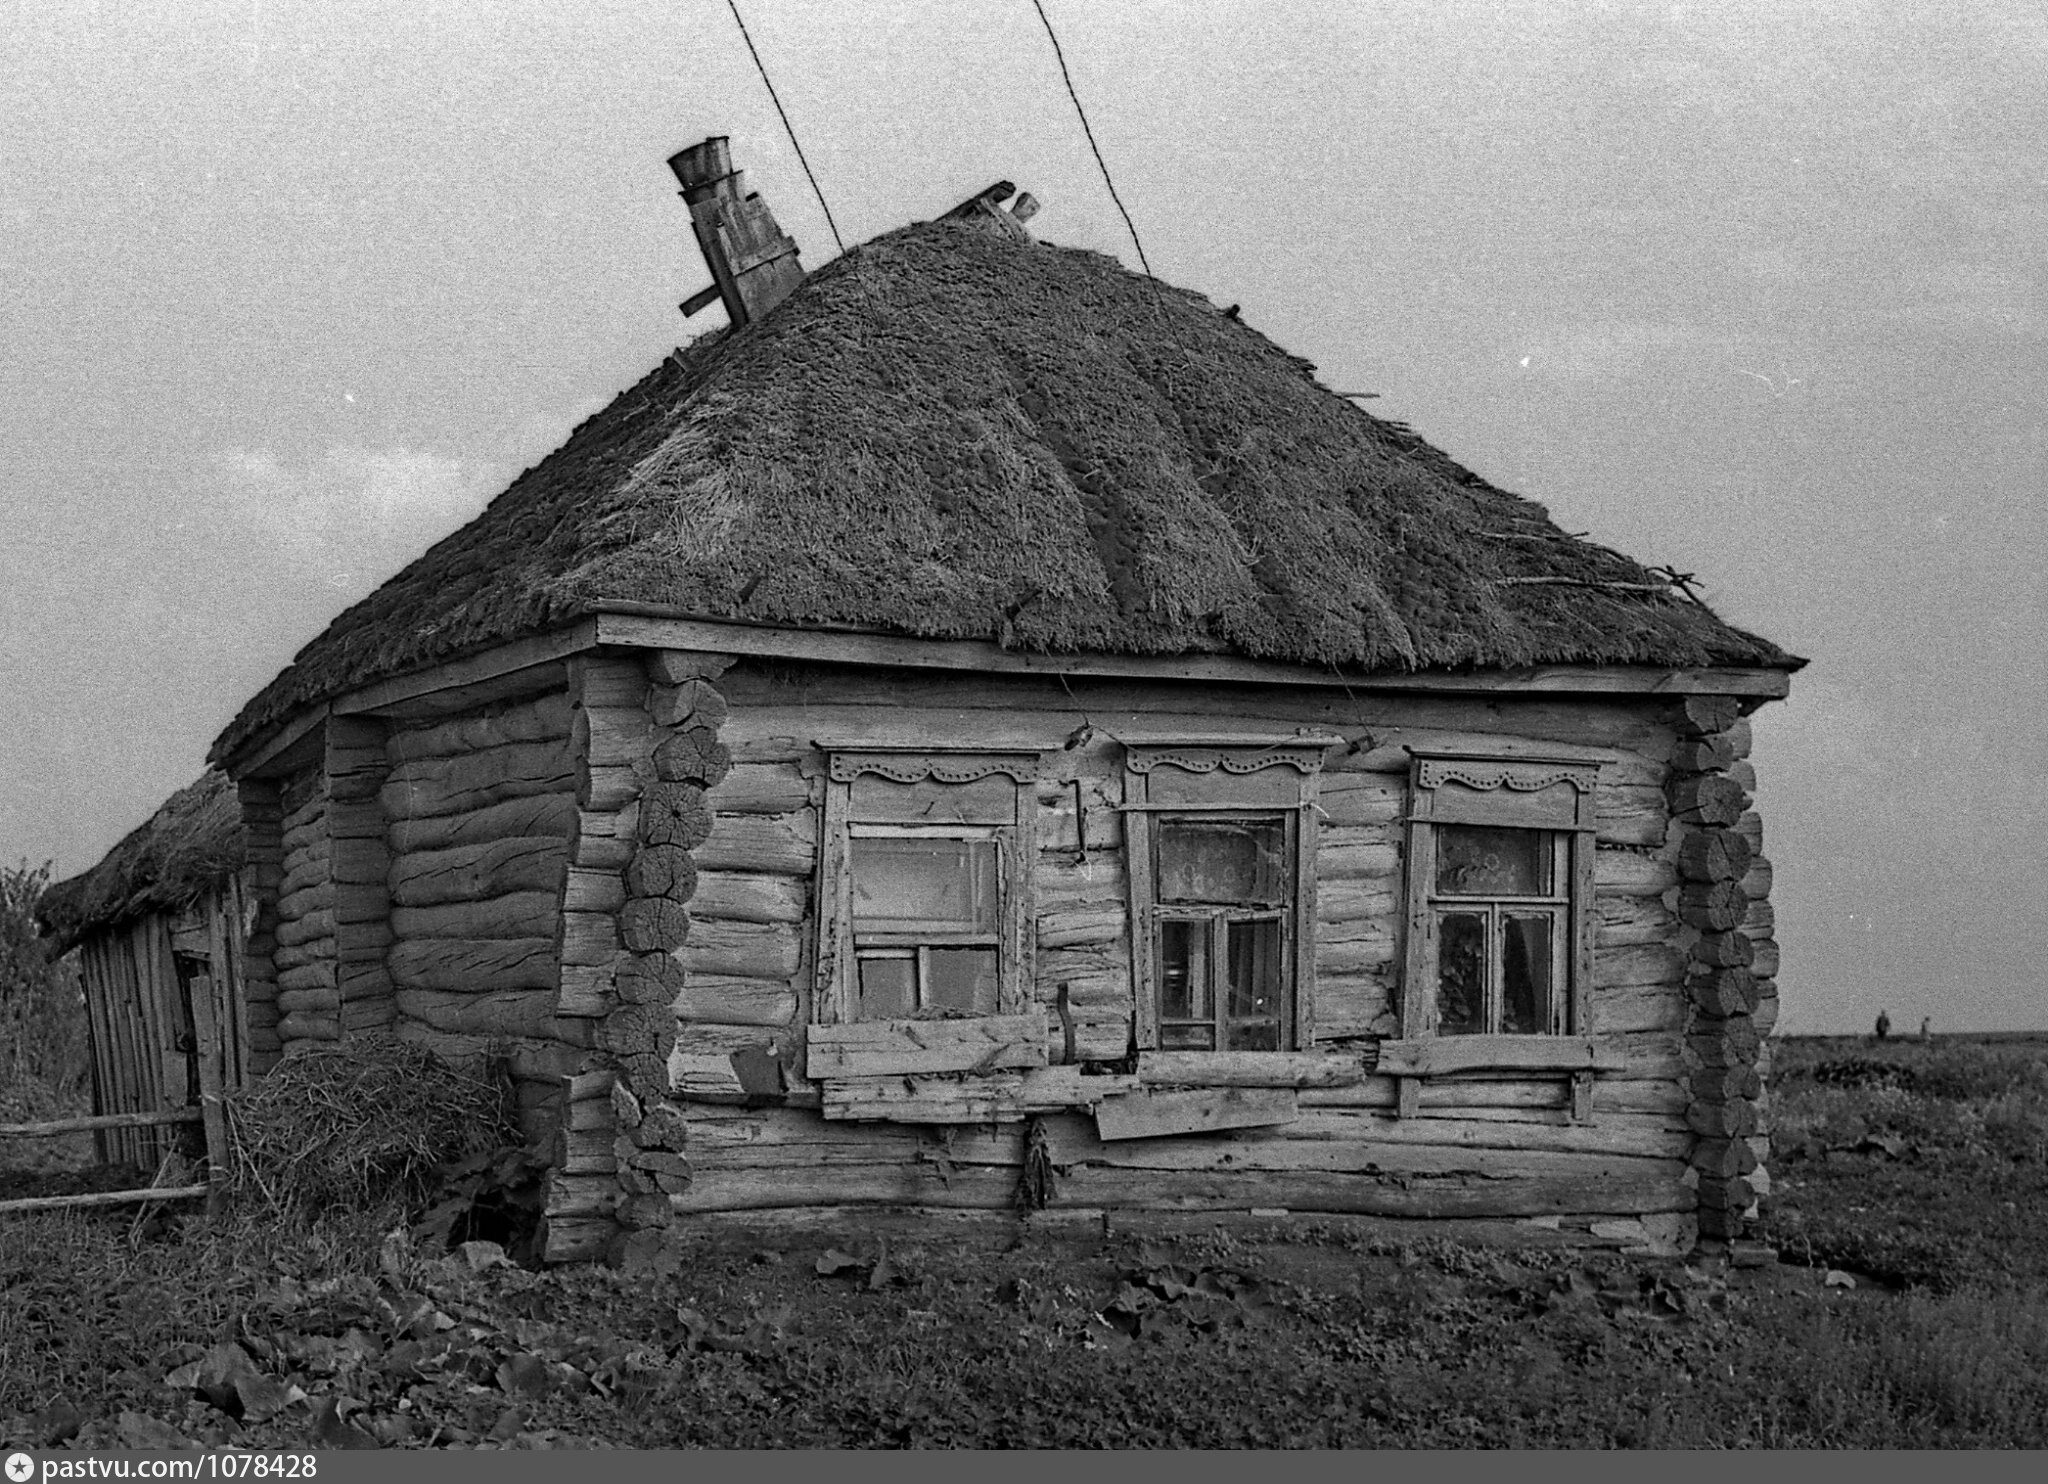 Изба 19 века с соломенной крышей